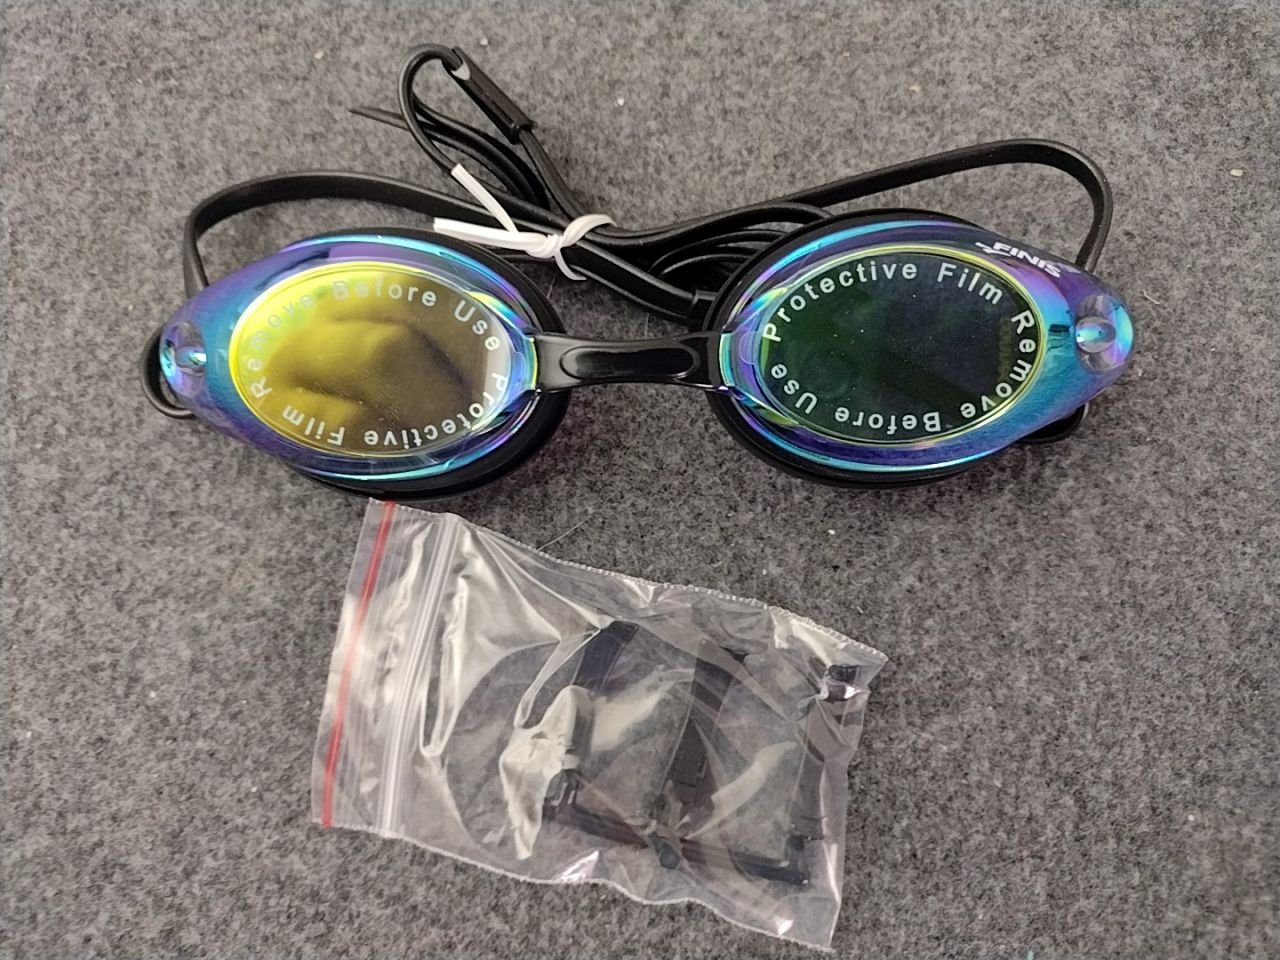 Plavecké brýle - žluto/černá/zrcadlové FINIS Bolt Multi-Mirro